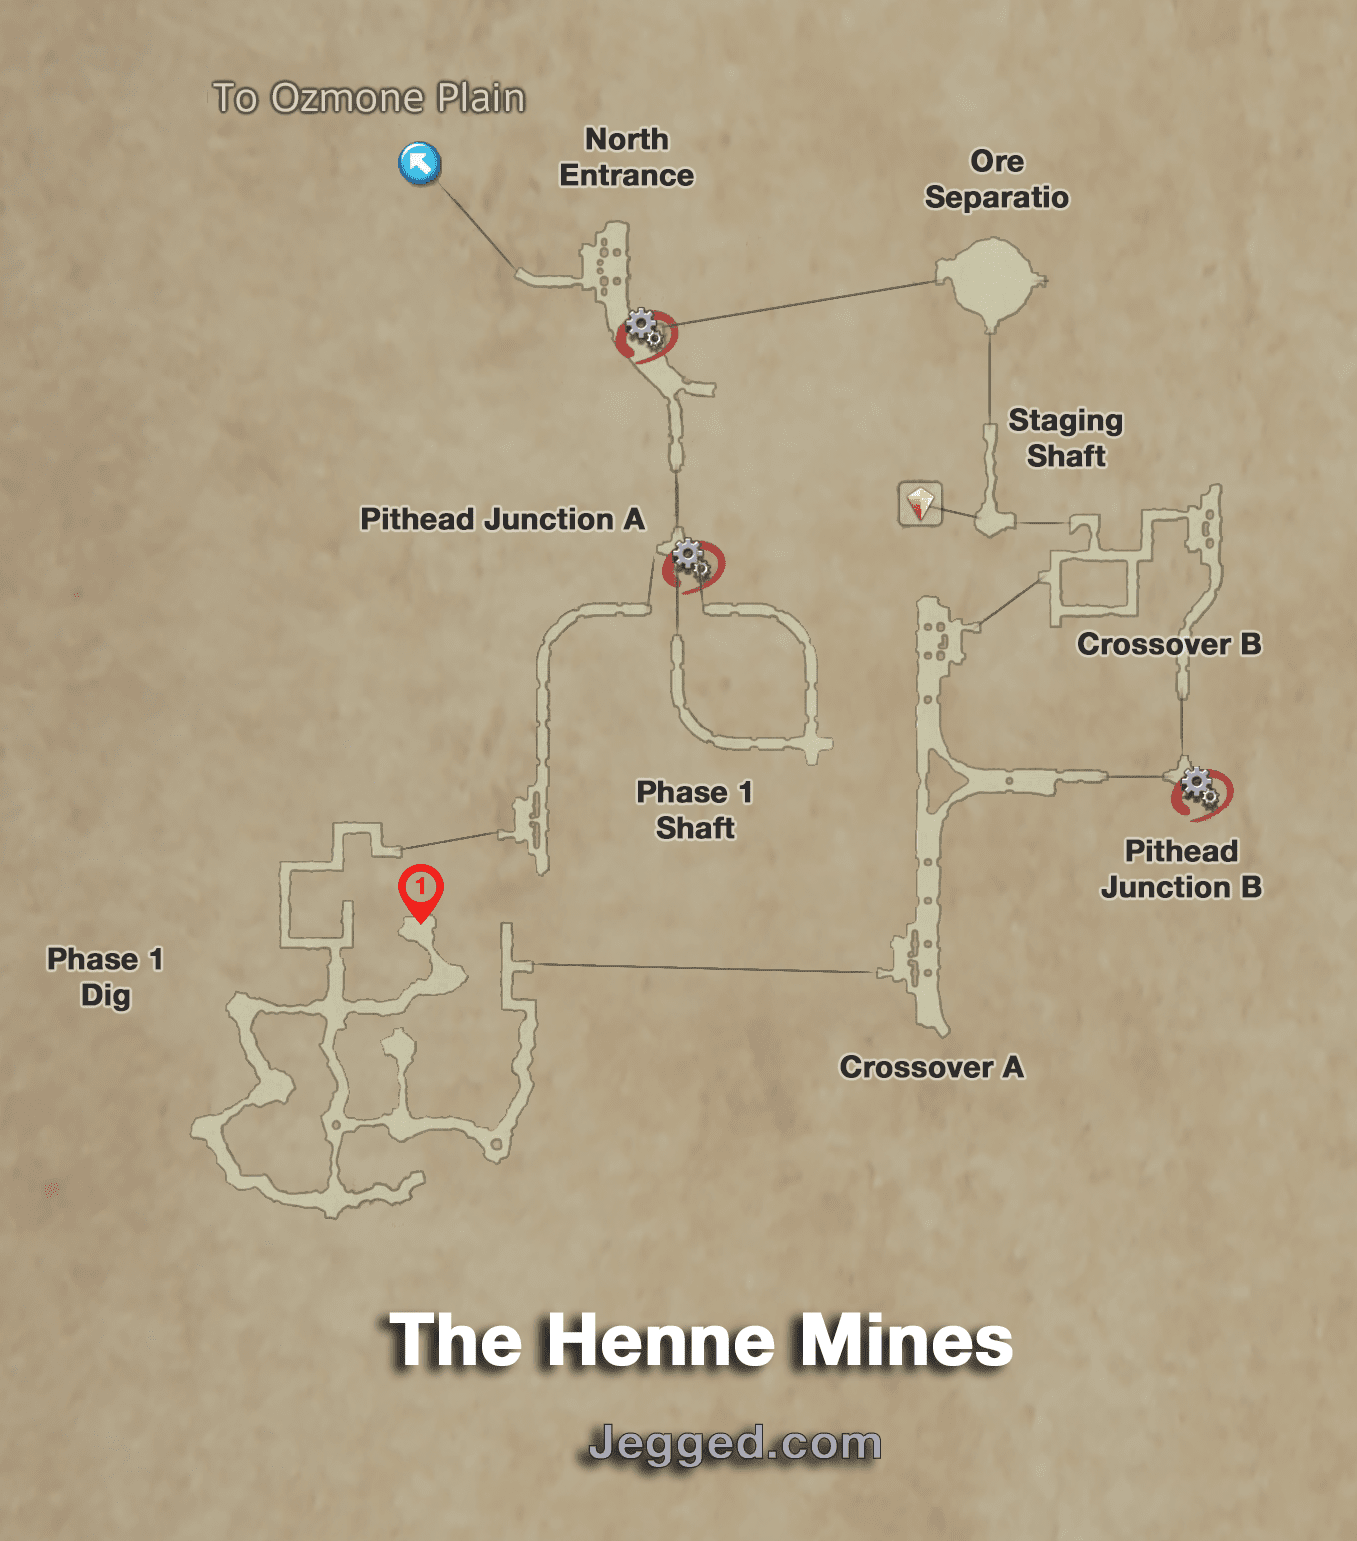 Henne Mines Treasure Map.